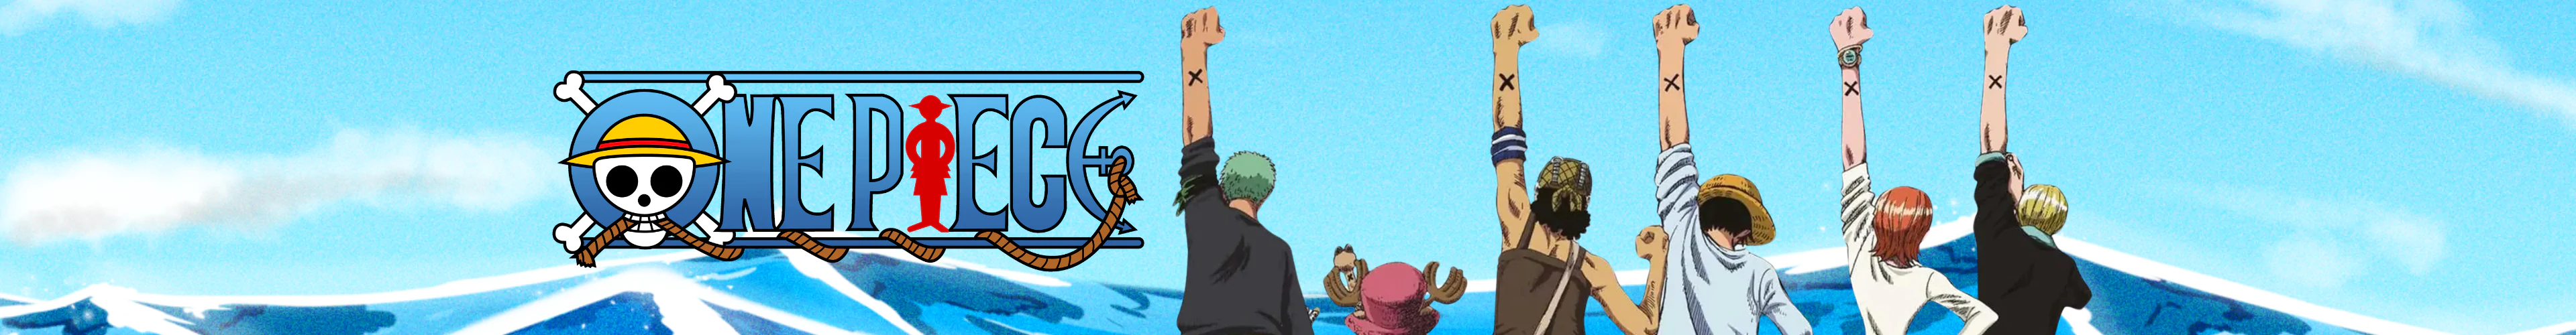 One Piece blankets banner